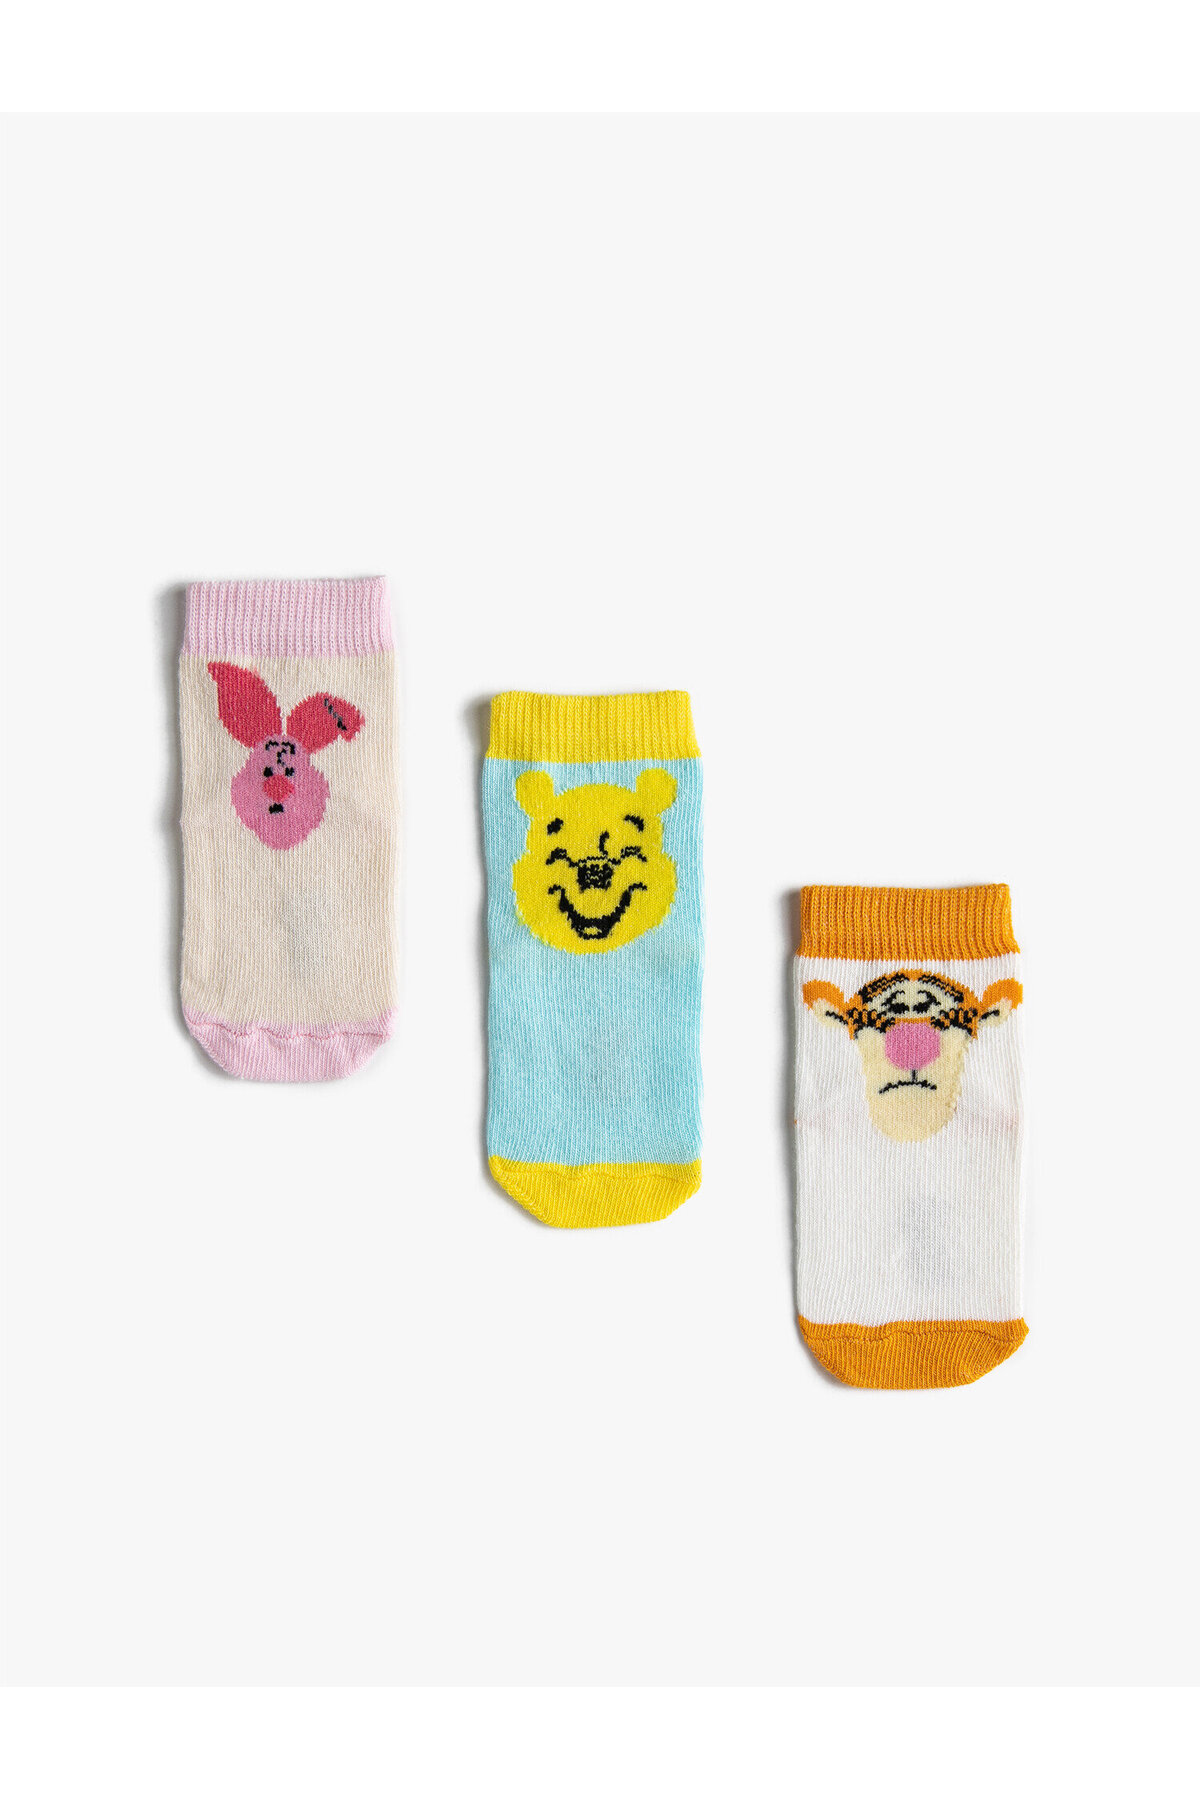 Koton 3-Pack Winnie The Pooh Printed Booties Socks Licensed, Set of 3